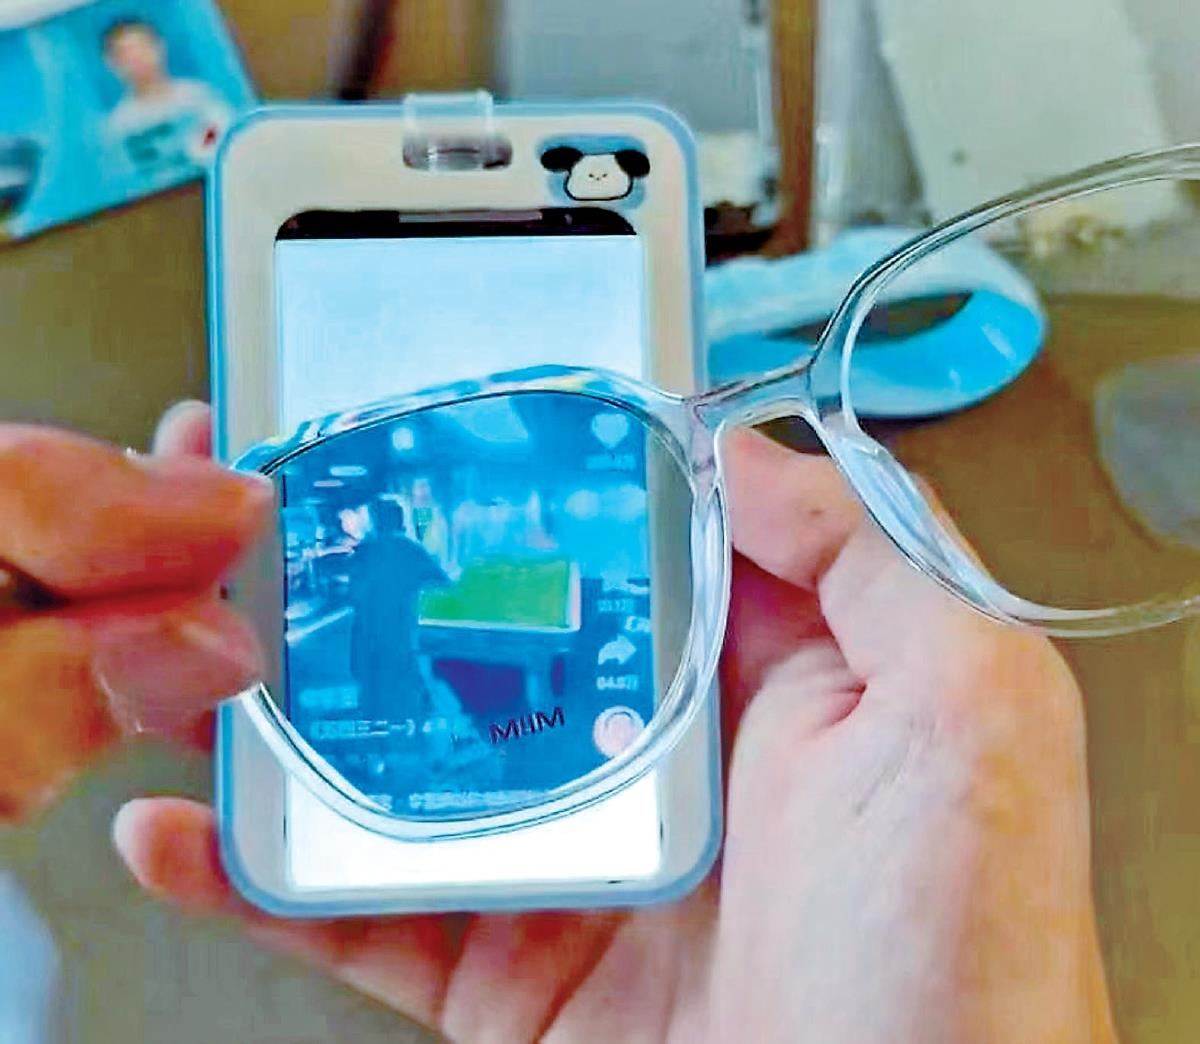 「饭卡手机」悄然流行，家长担忧。(取材自北京青年报)